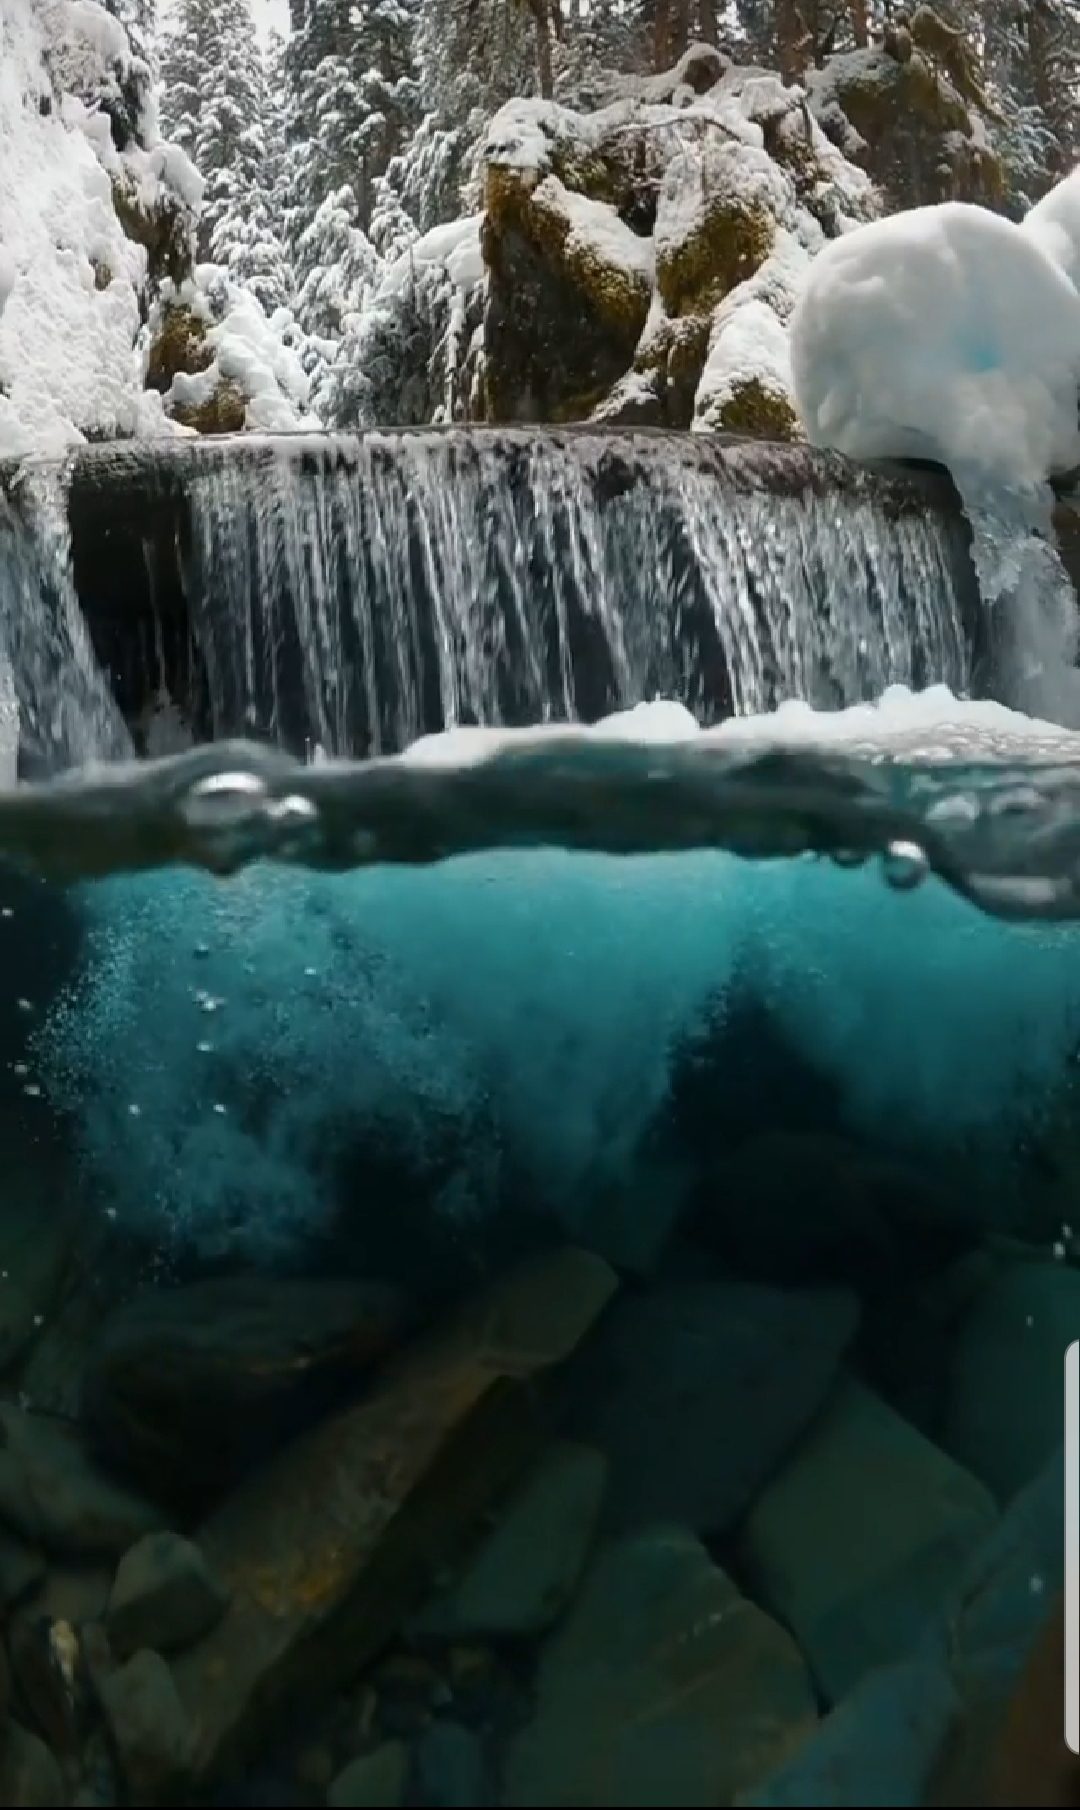 نمایی شگفت انگیز از زیر آب در آلاسکا